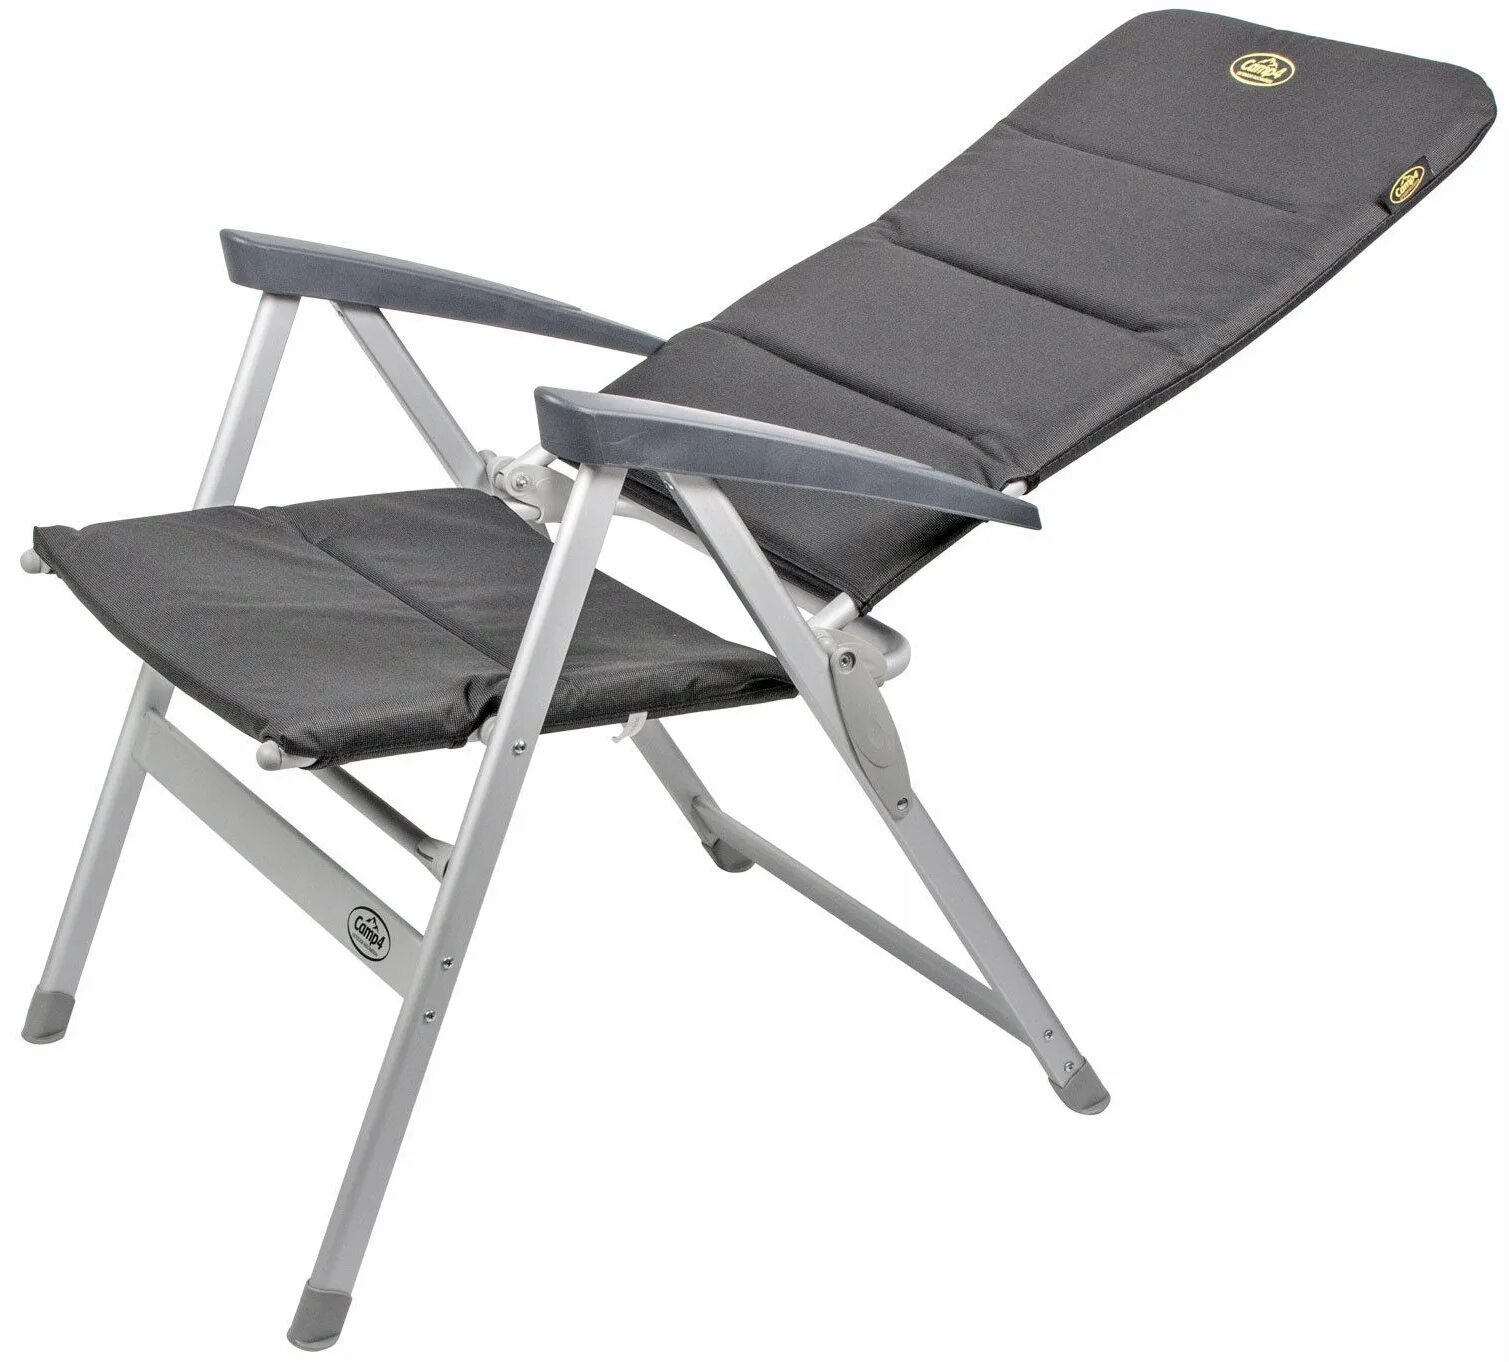 Кресло складное Canadian Camper cc-128. Кресло аутвенчер кемпинговое. PROFICAMP кресло складное туристическое "КС-127". Кемпинговое кресло Outventure Camping Chair. Кресло походное складное